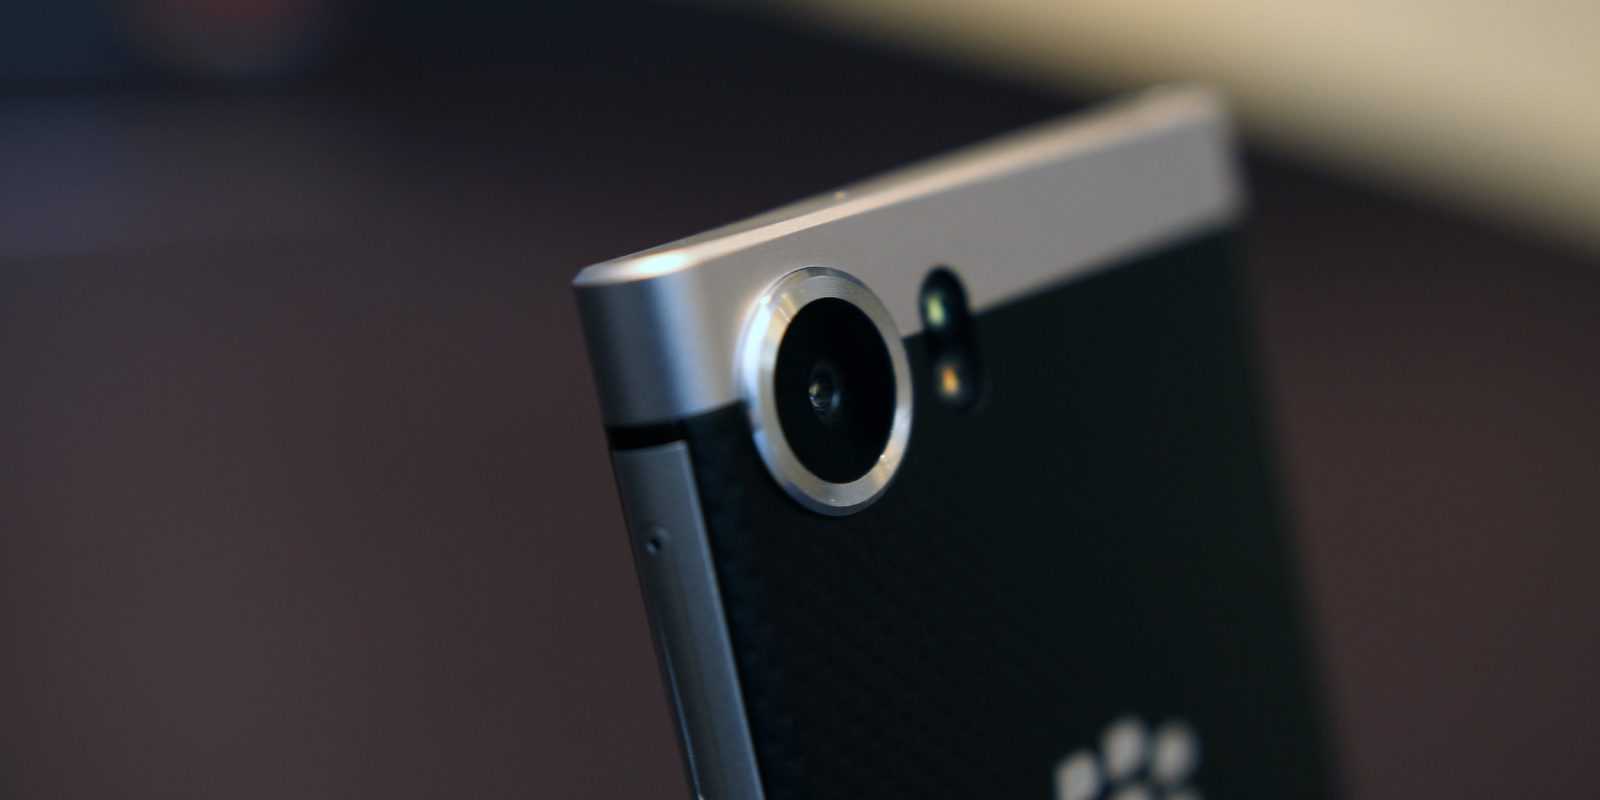 Pixel 3a xl — обзор «бюджетного» смартфона google